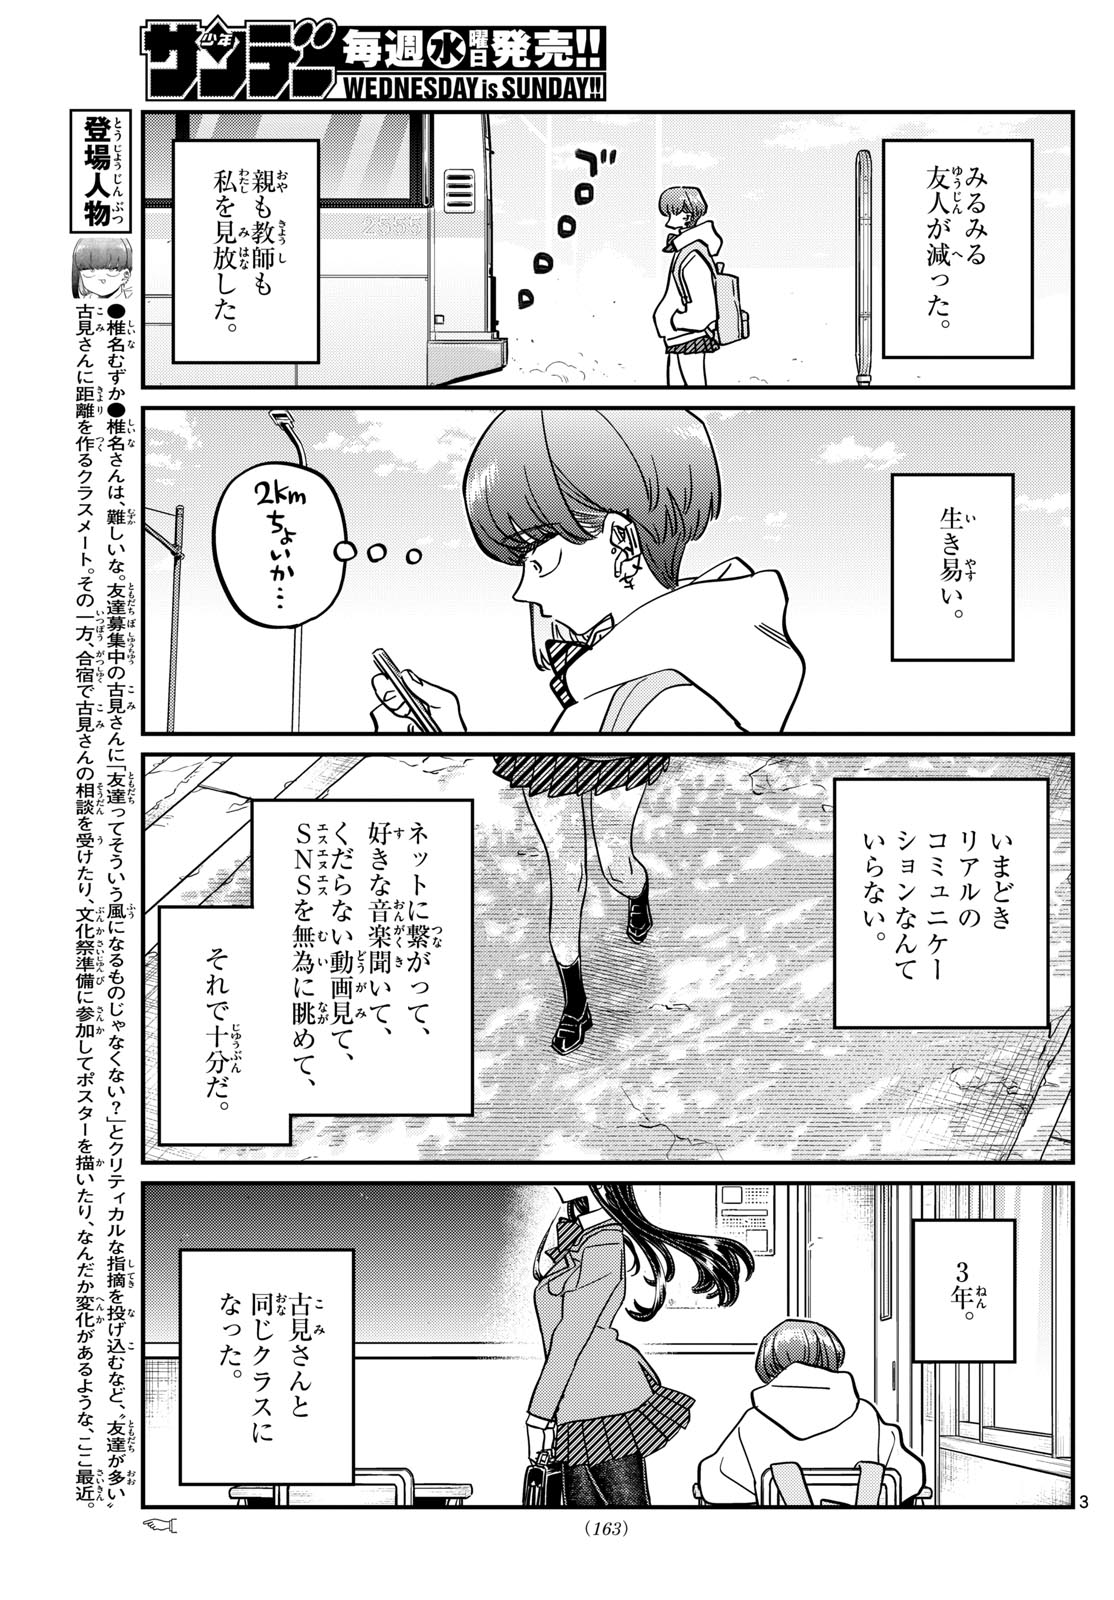 Komi-san wa Komyushou Desu - Chapter 452 - Page 3